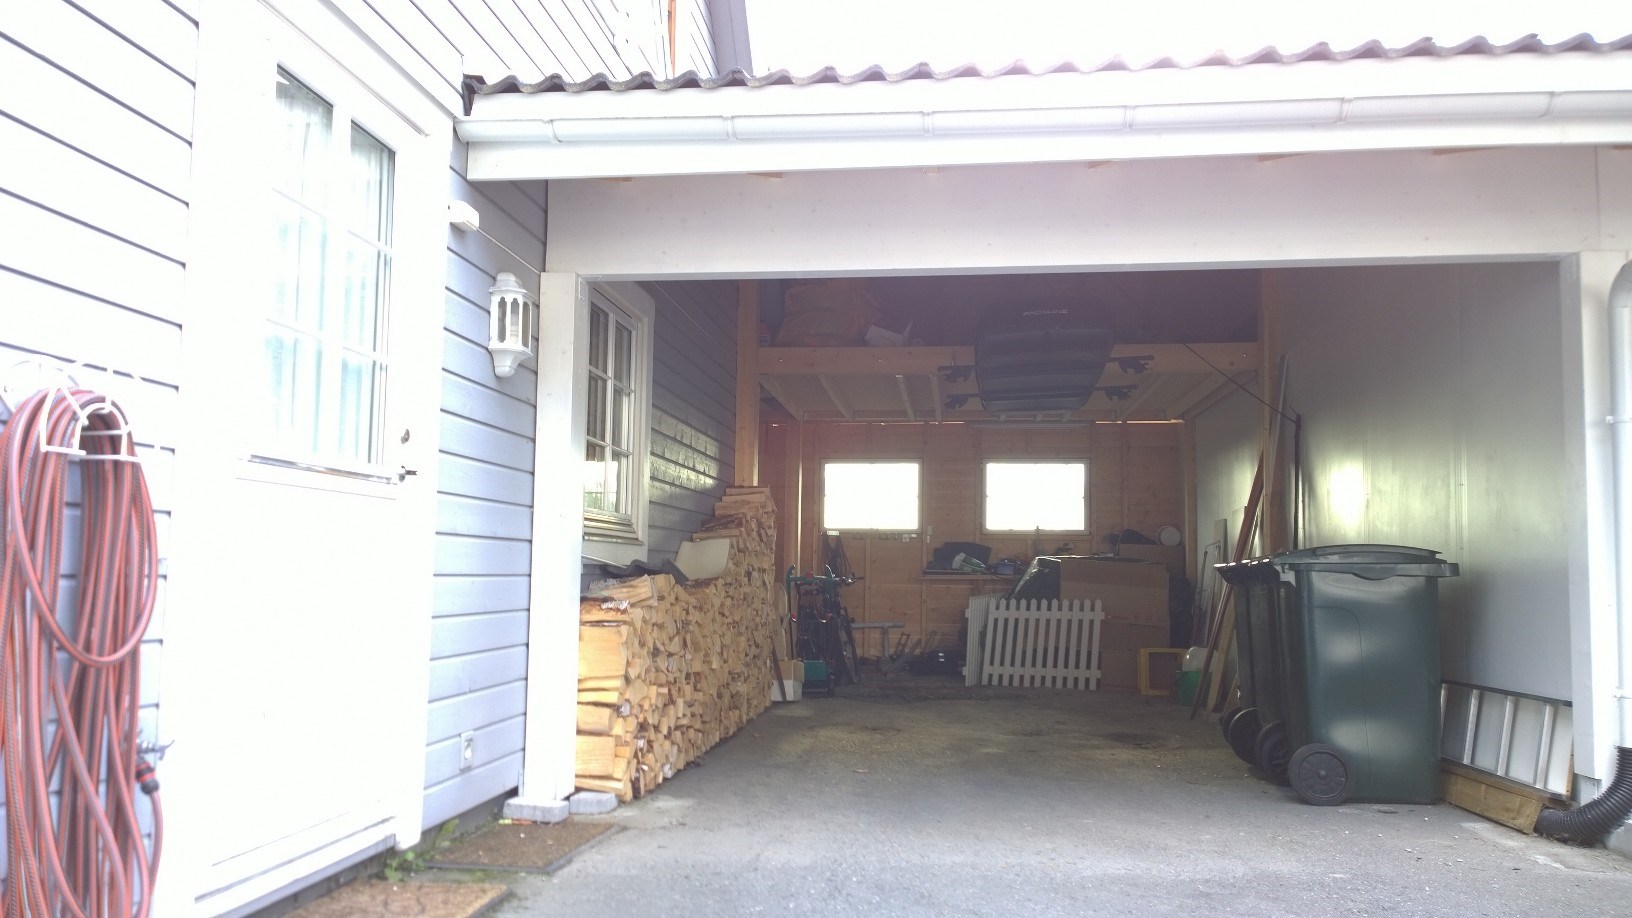 Bygge isolert bod i carport/garasje - Løsninger? - WP_20150907_18_00_56_Pro.jpg - Grizzly